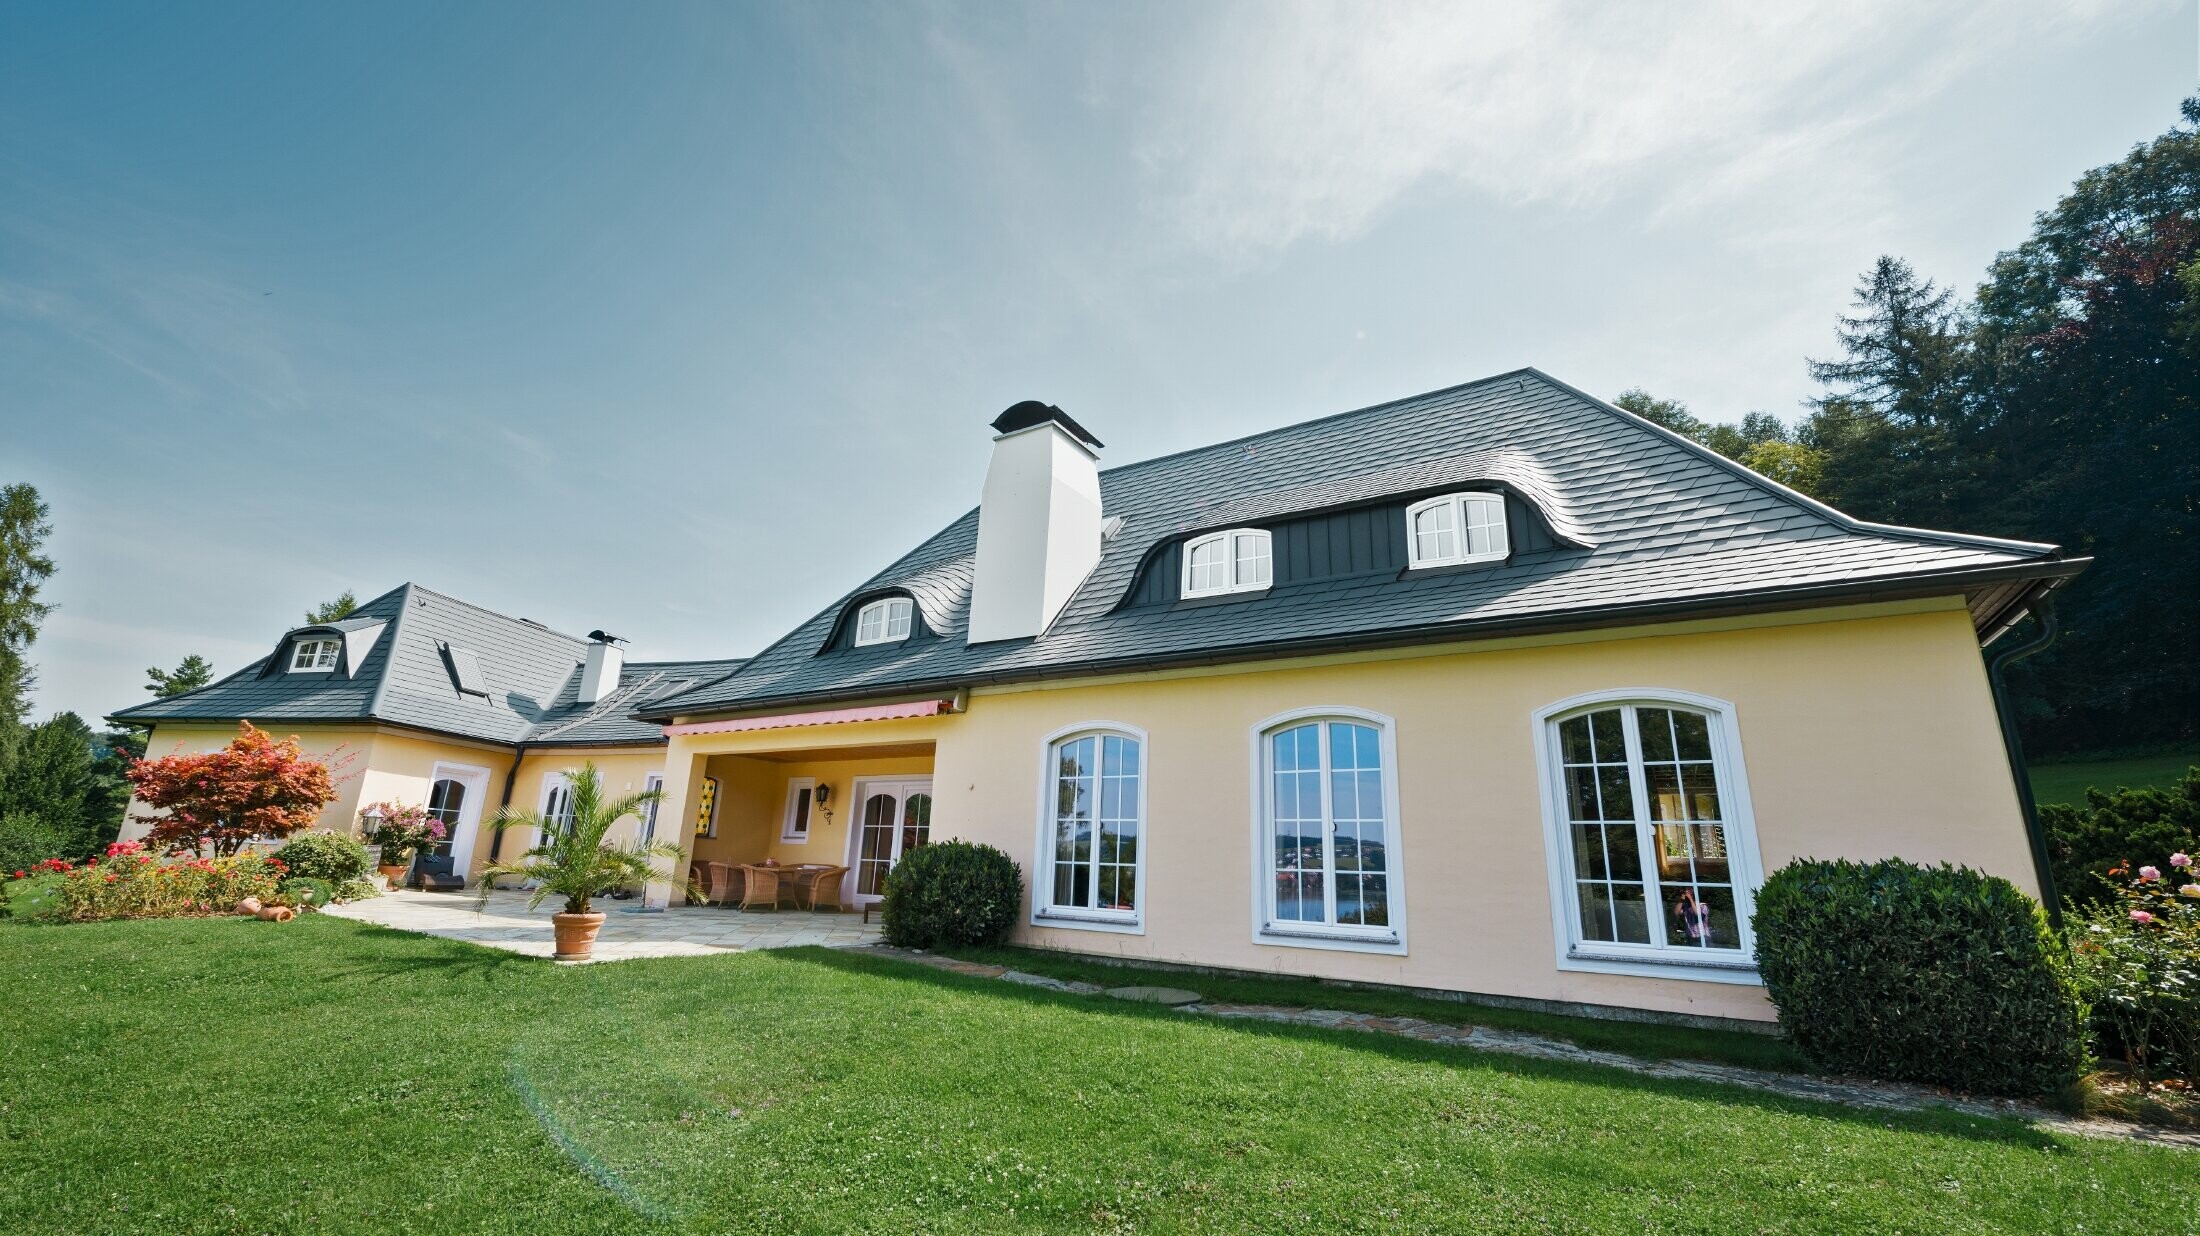 Klasična obiteljska kuća sa zaobljenom krovom kućicom, pokrivena PREFA šindrom otpornom na nevrijeme, s 40-godišnjim jamstvom za materijal.